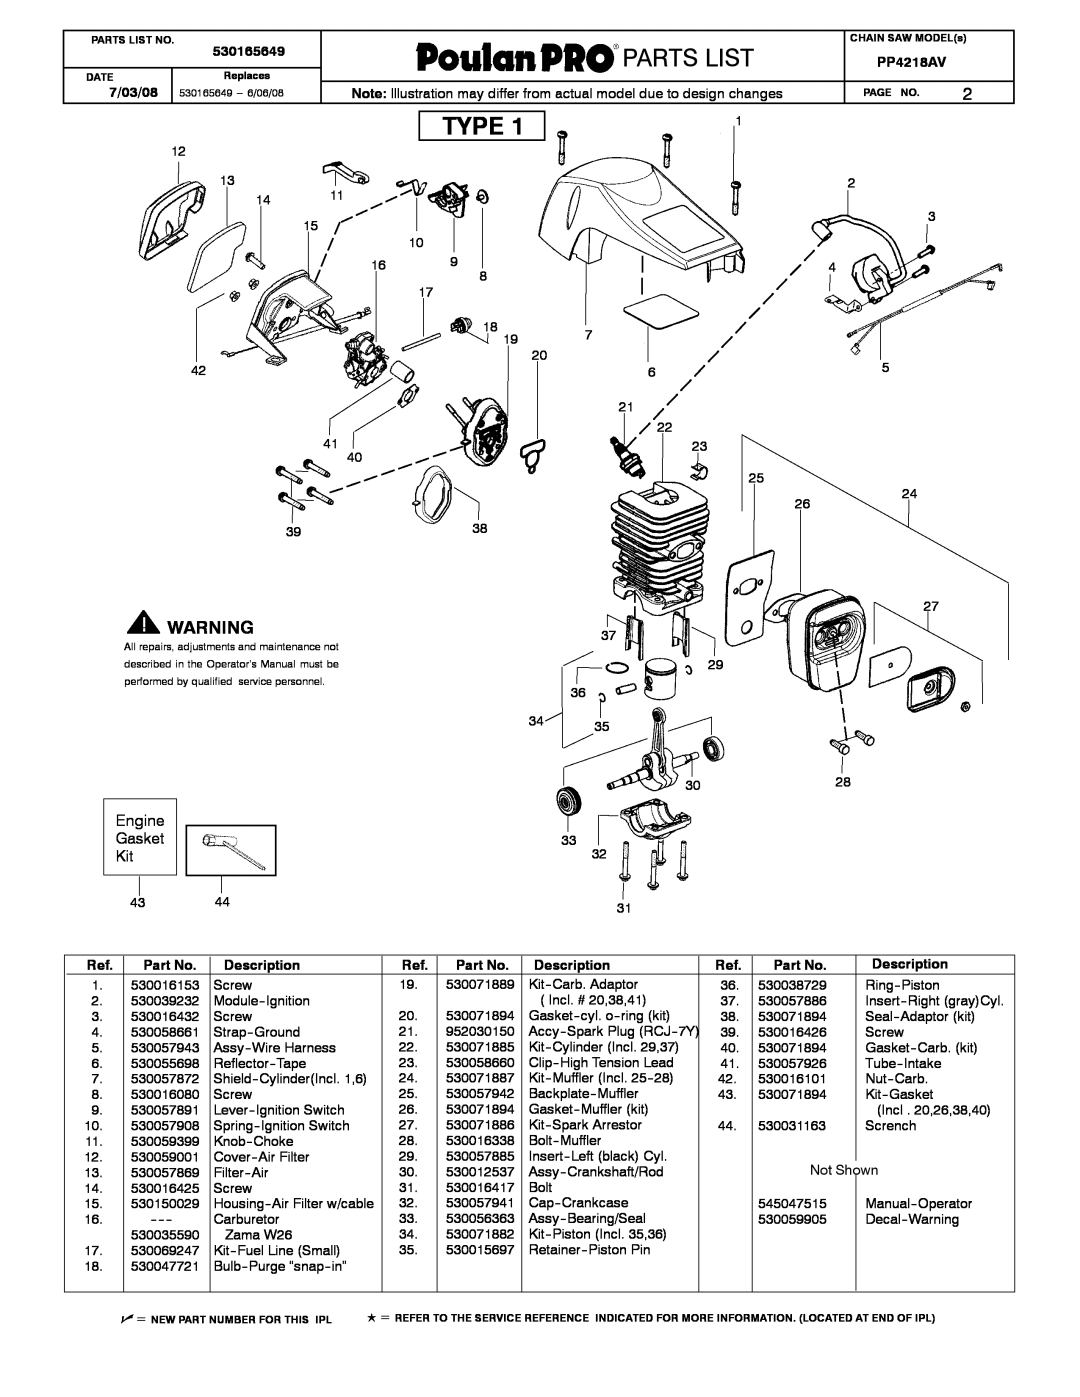 Poulan 530165649 manual Type, Engine Gasket Kit, Description, Weed Eaterrrr, Partslist 